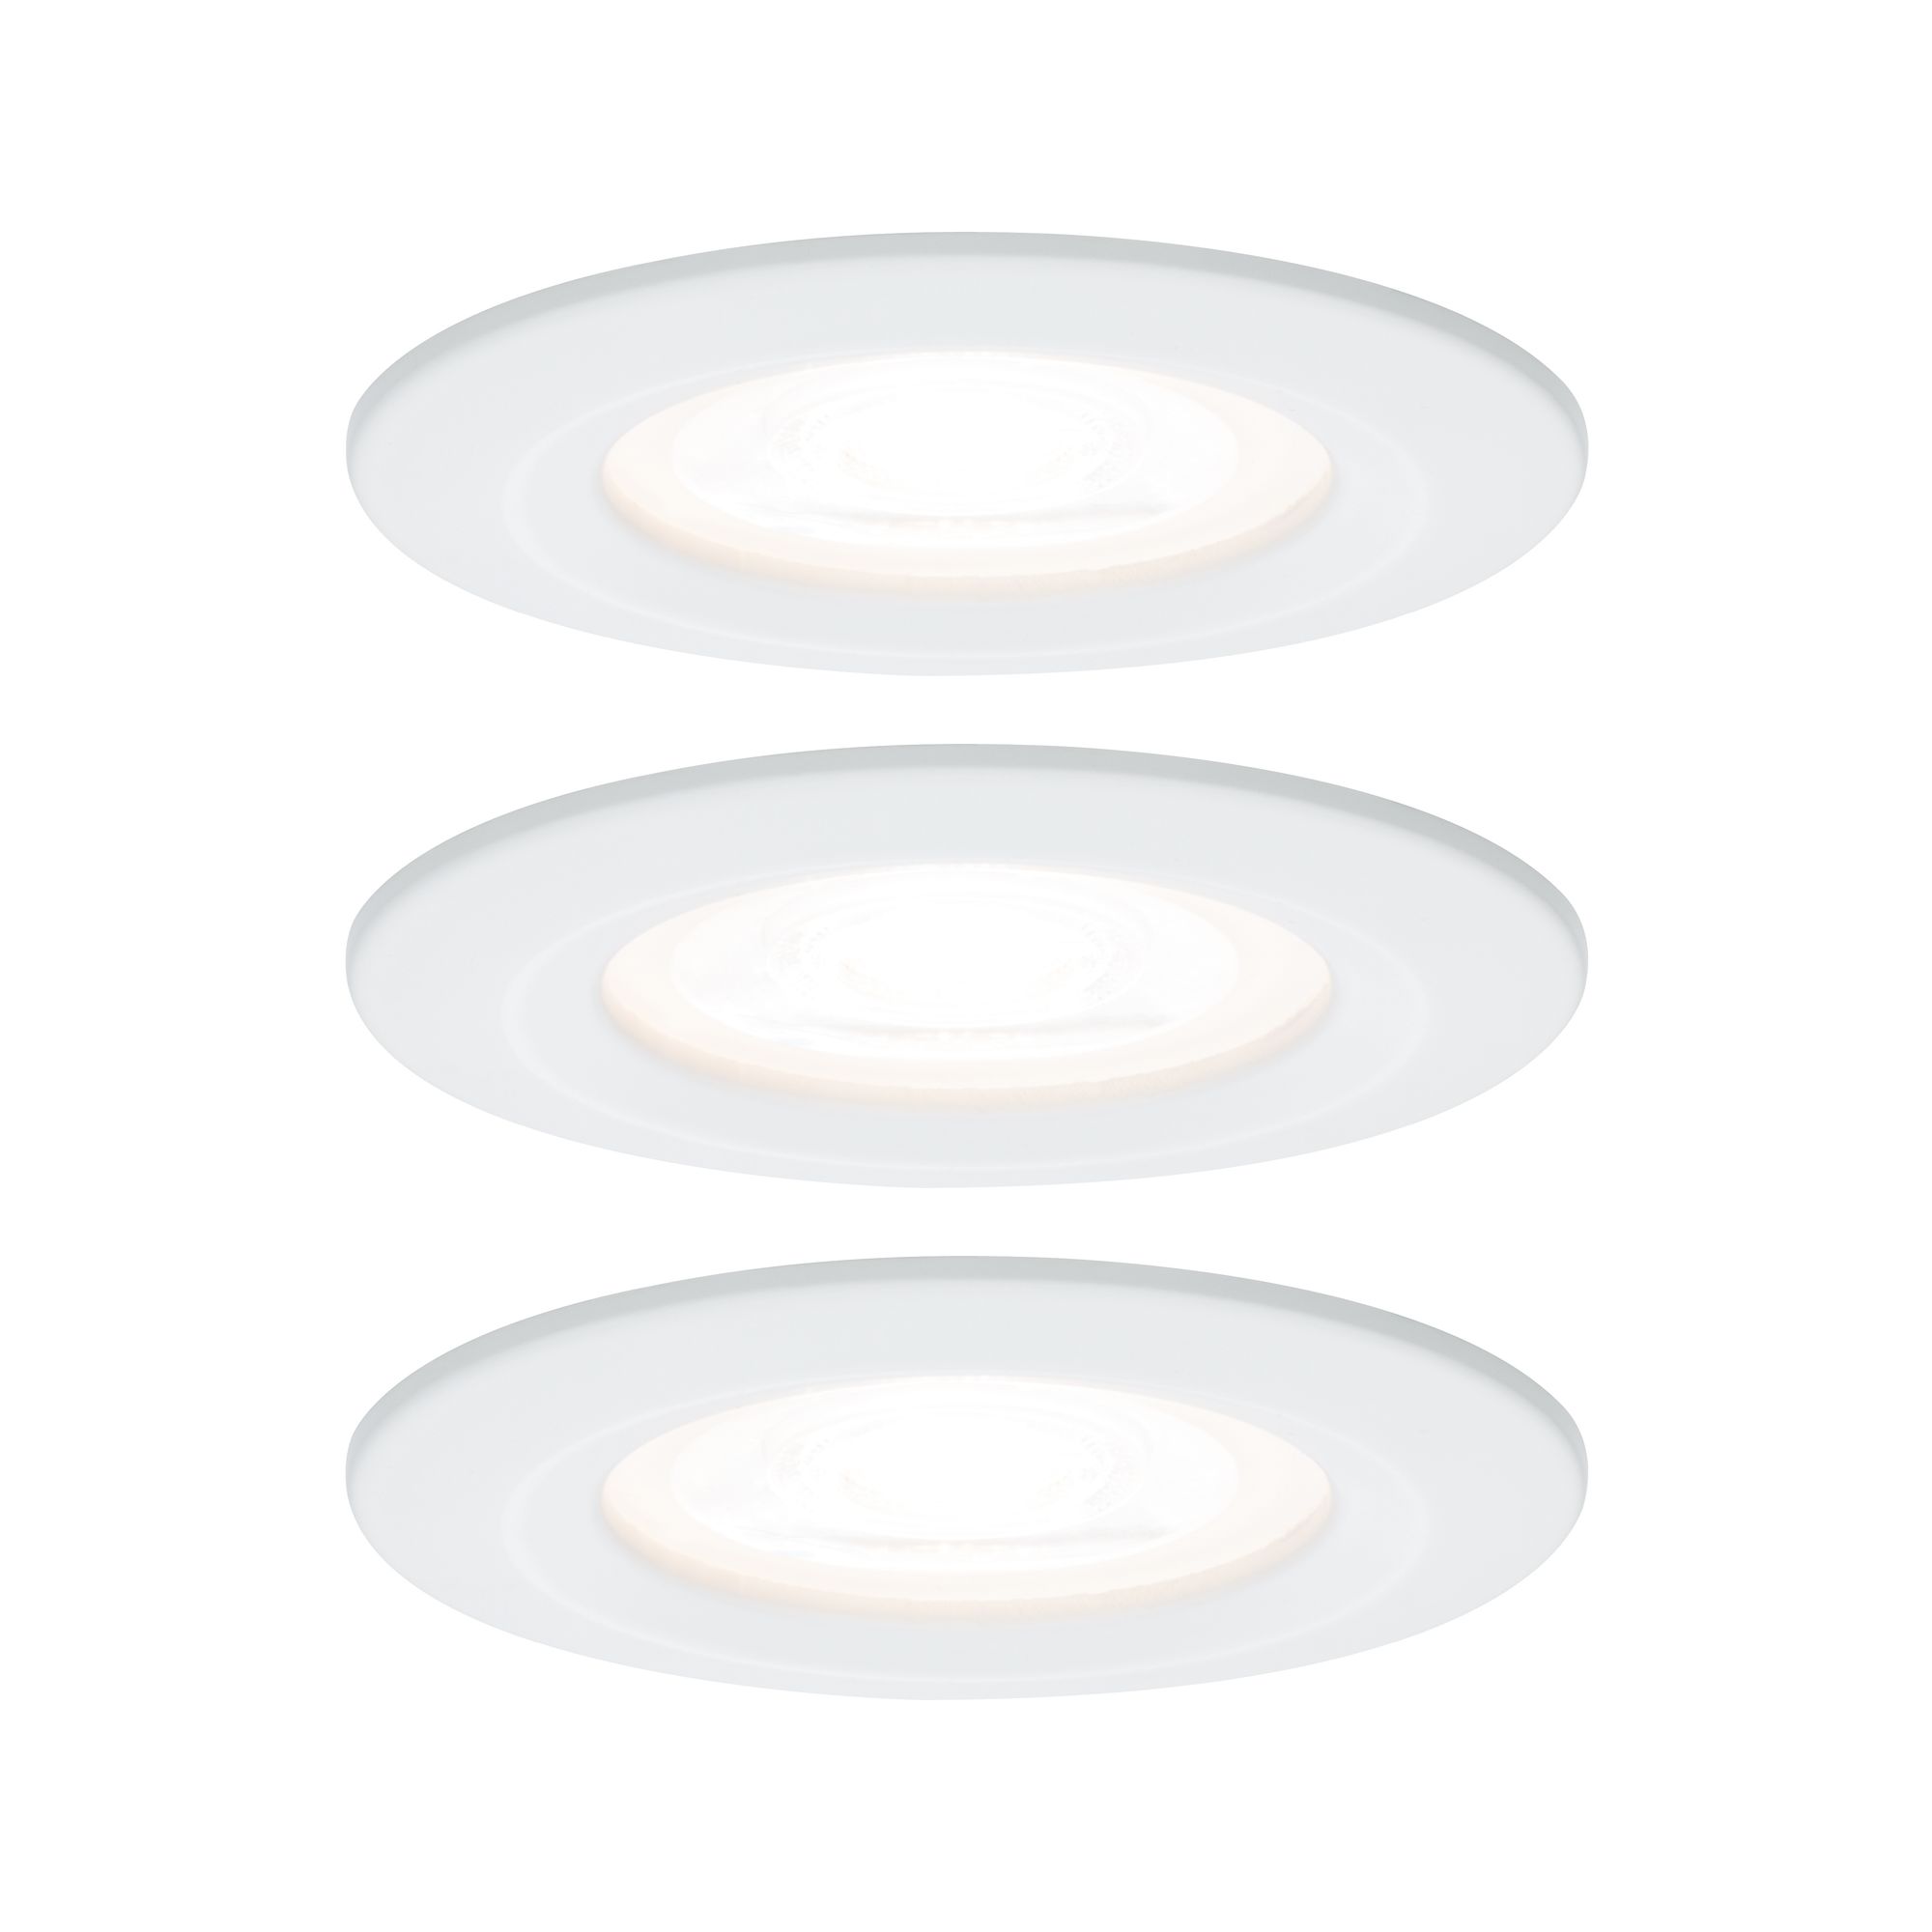 PAULMANN - Vestavné svítidlo LED Nova kruhové 3x6,5W GU10 bílá mat nevýklopné, P 93442